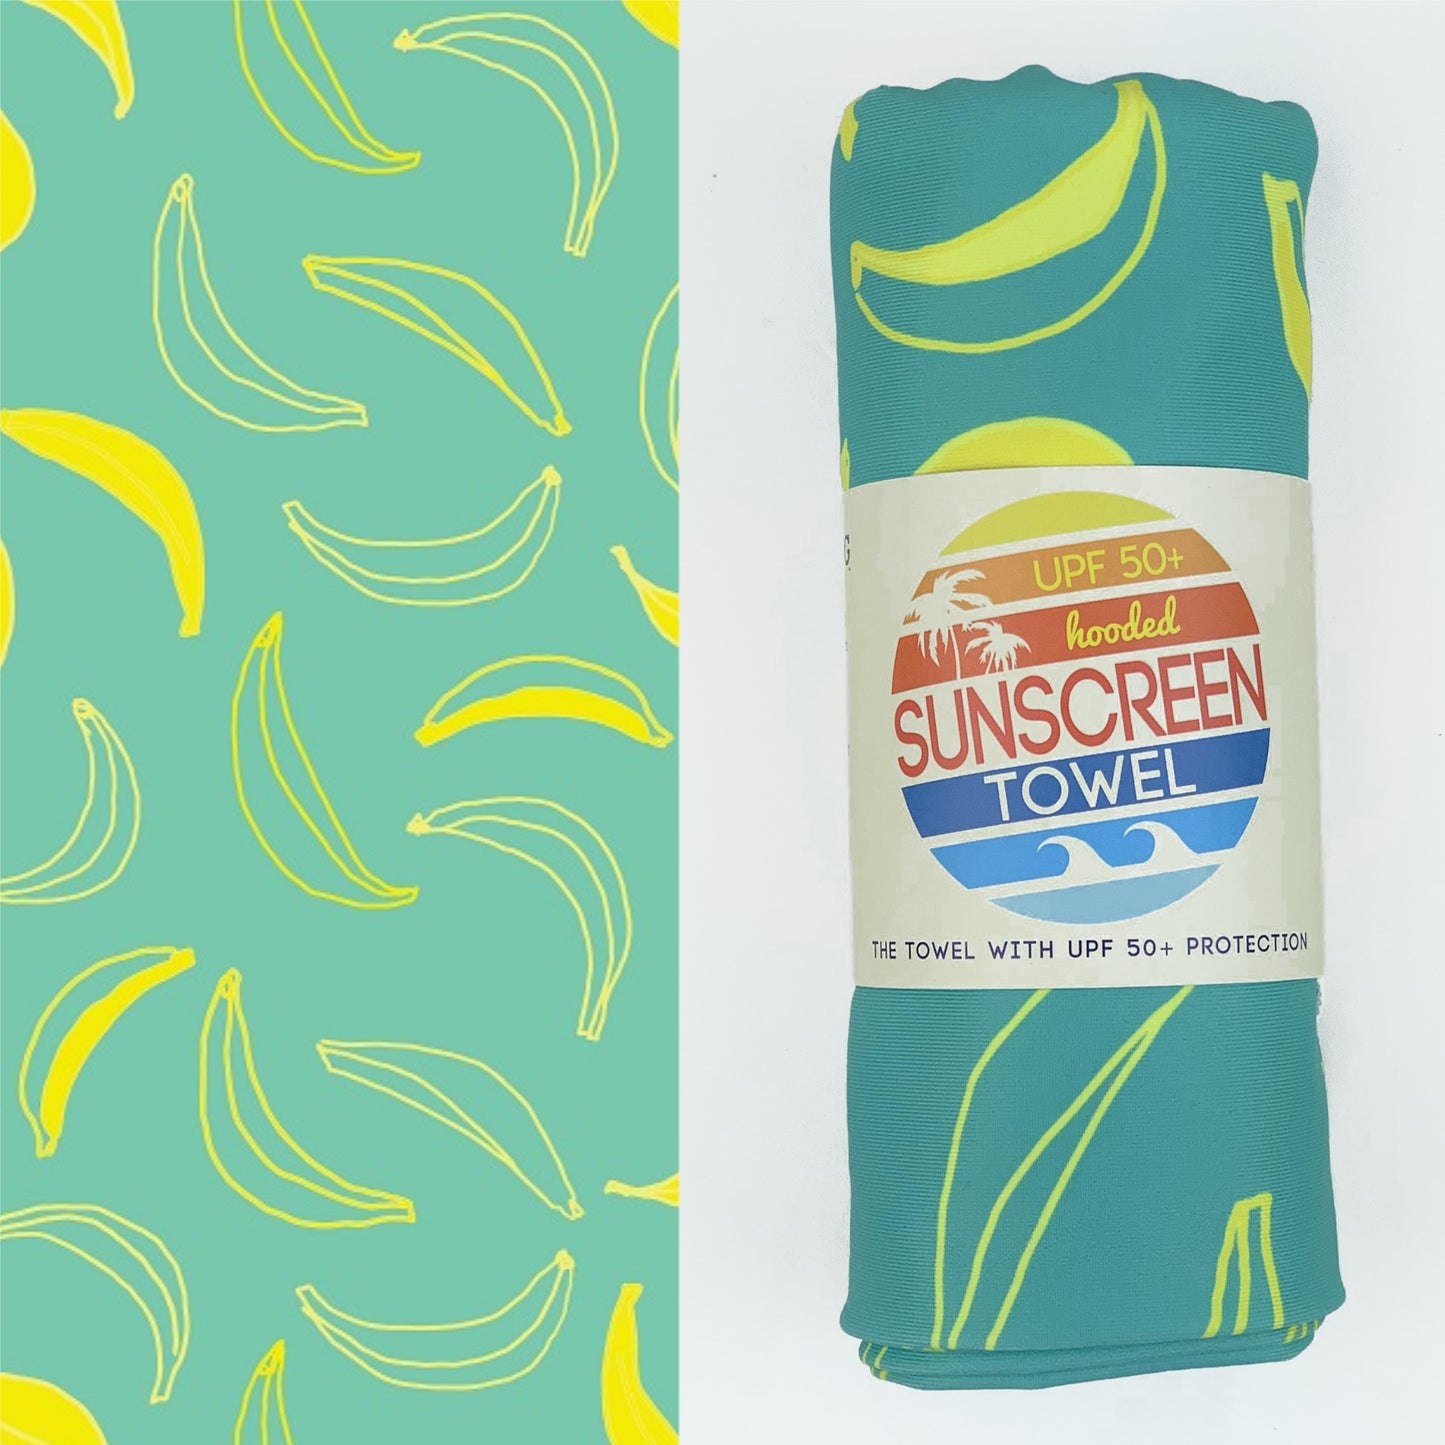 UPF 50+ Sunscreen Towel with Hood